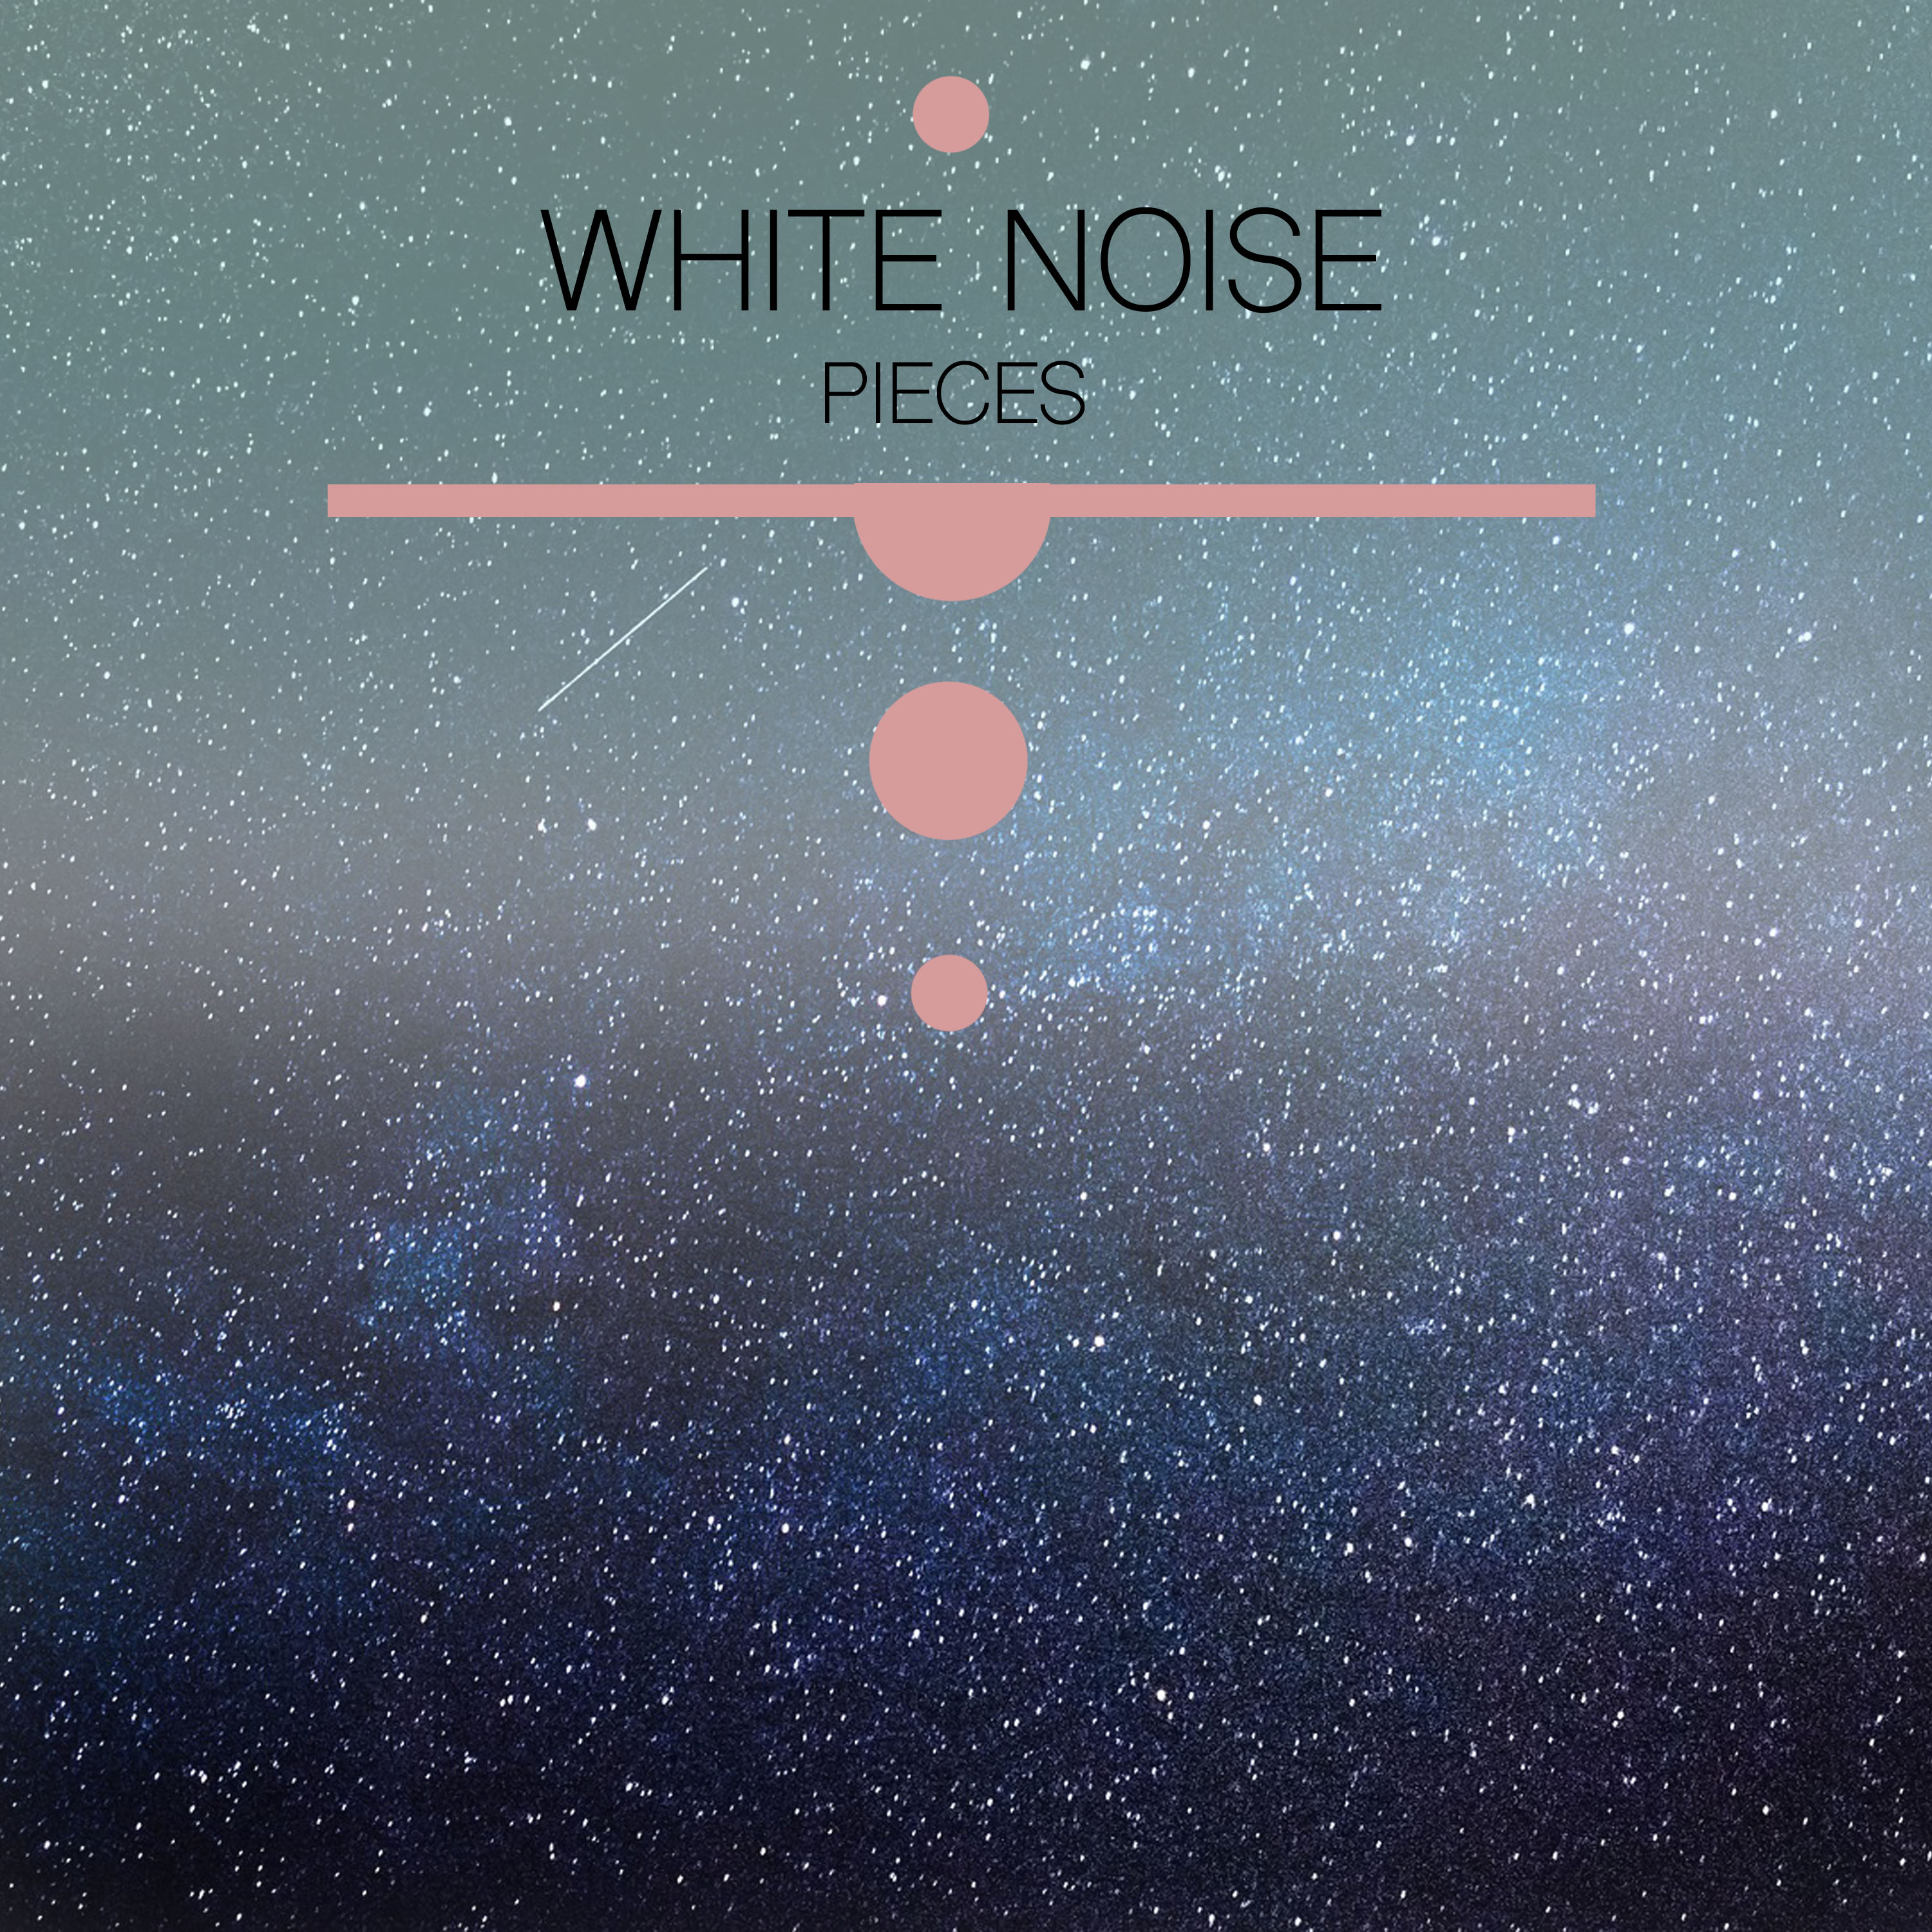 11 White Noise Pieces